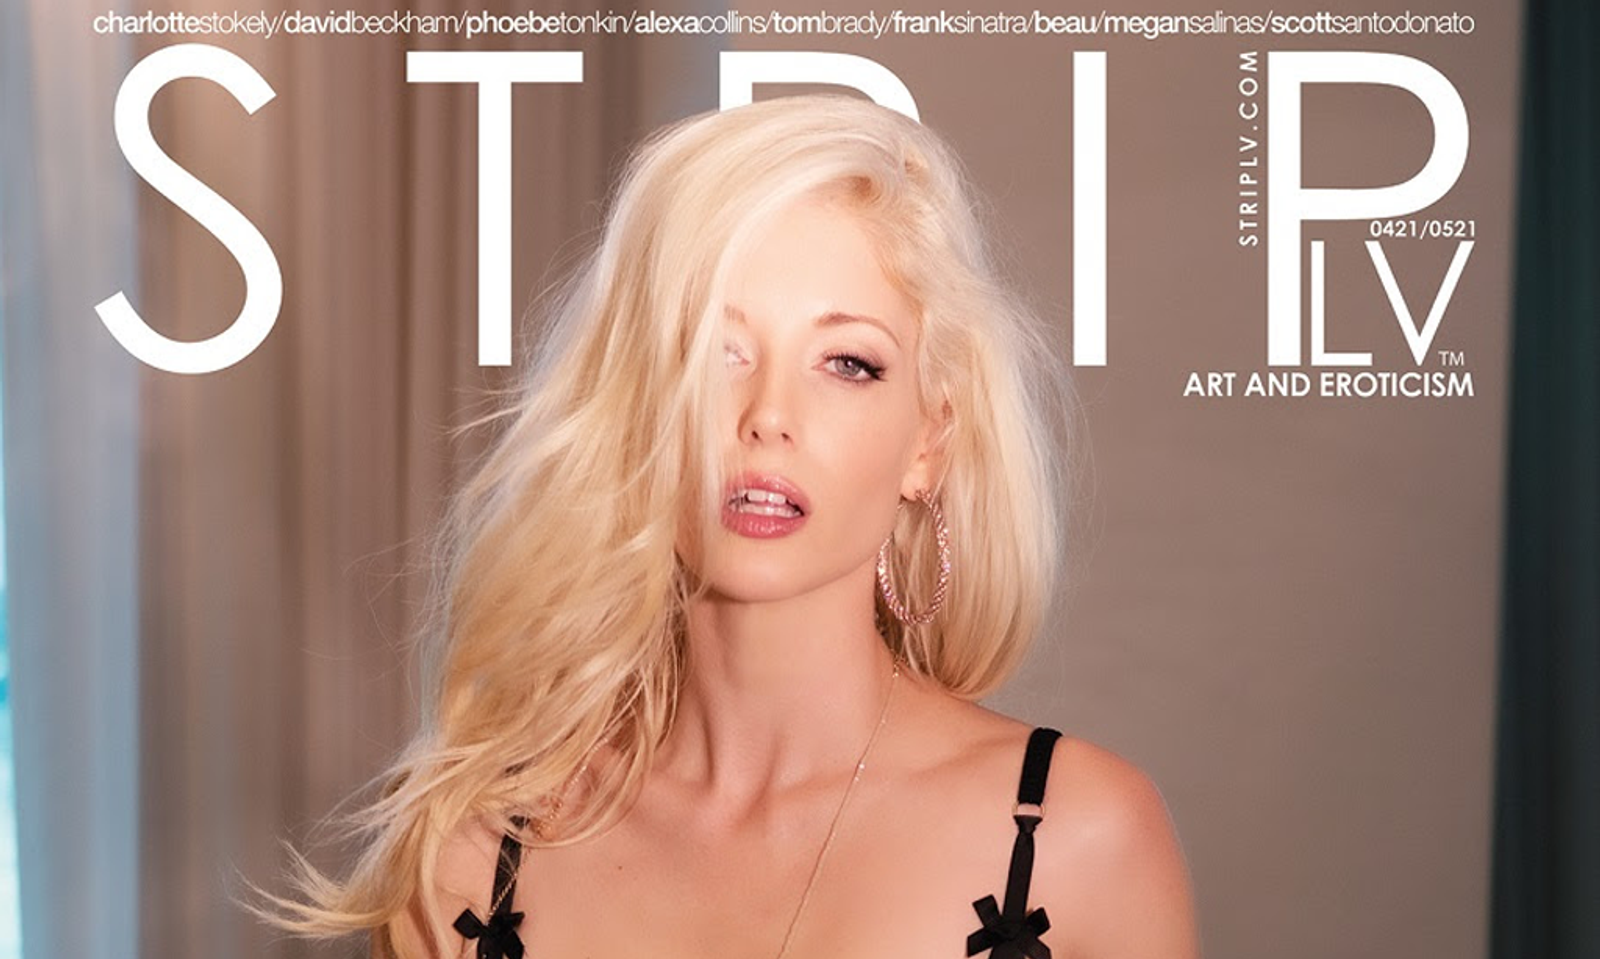 Charlotte Stokely Lands Cover of 'STRIPLV Magazine'